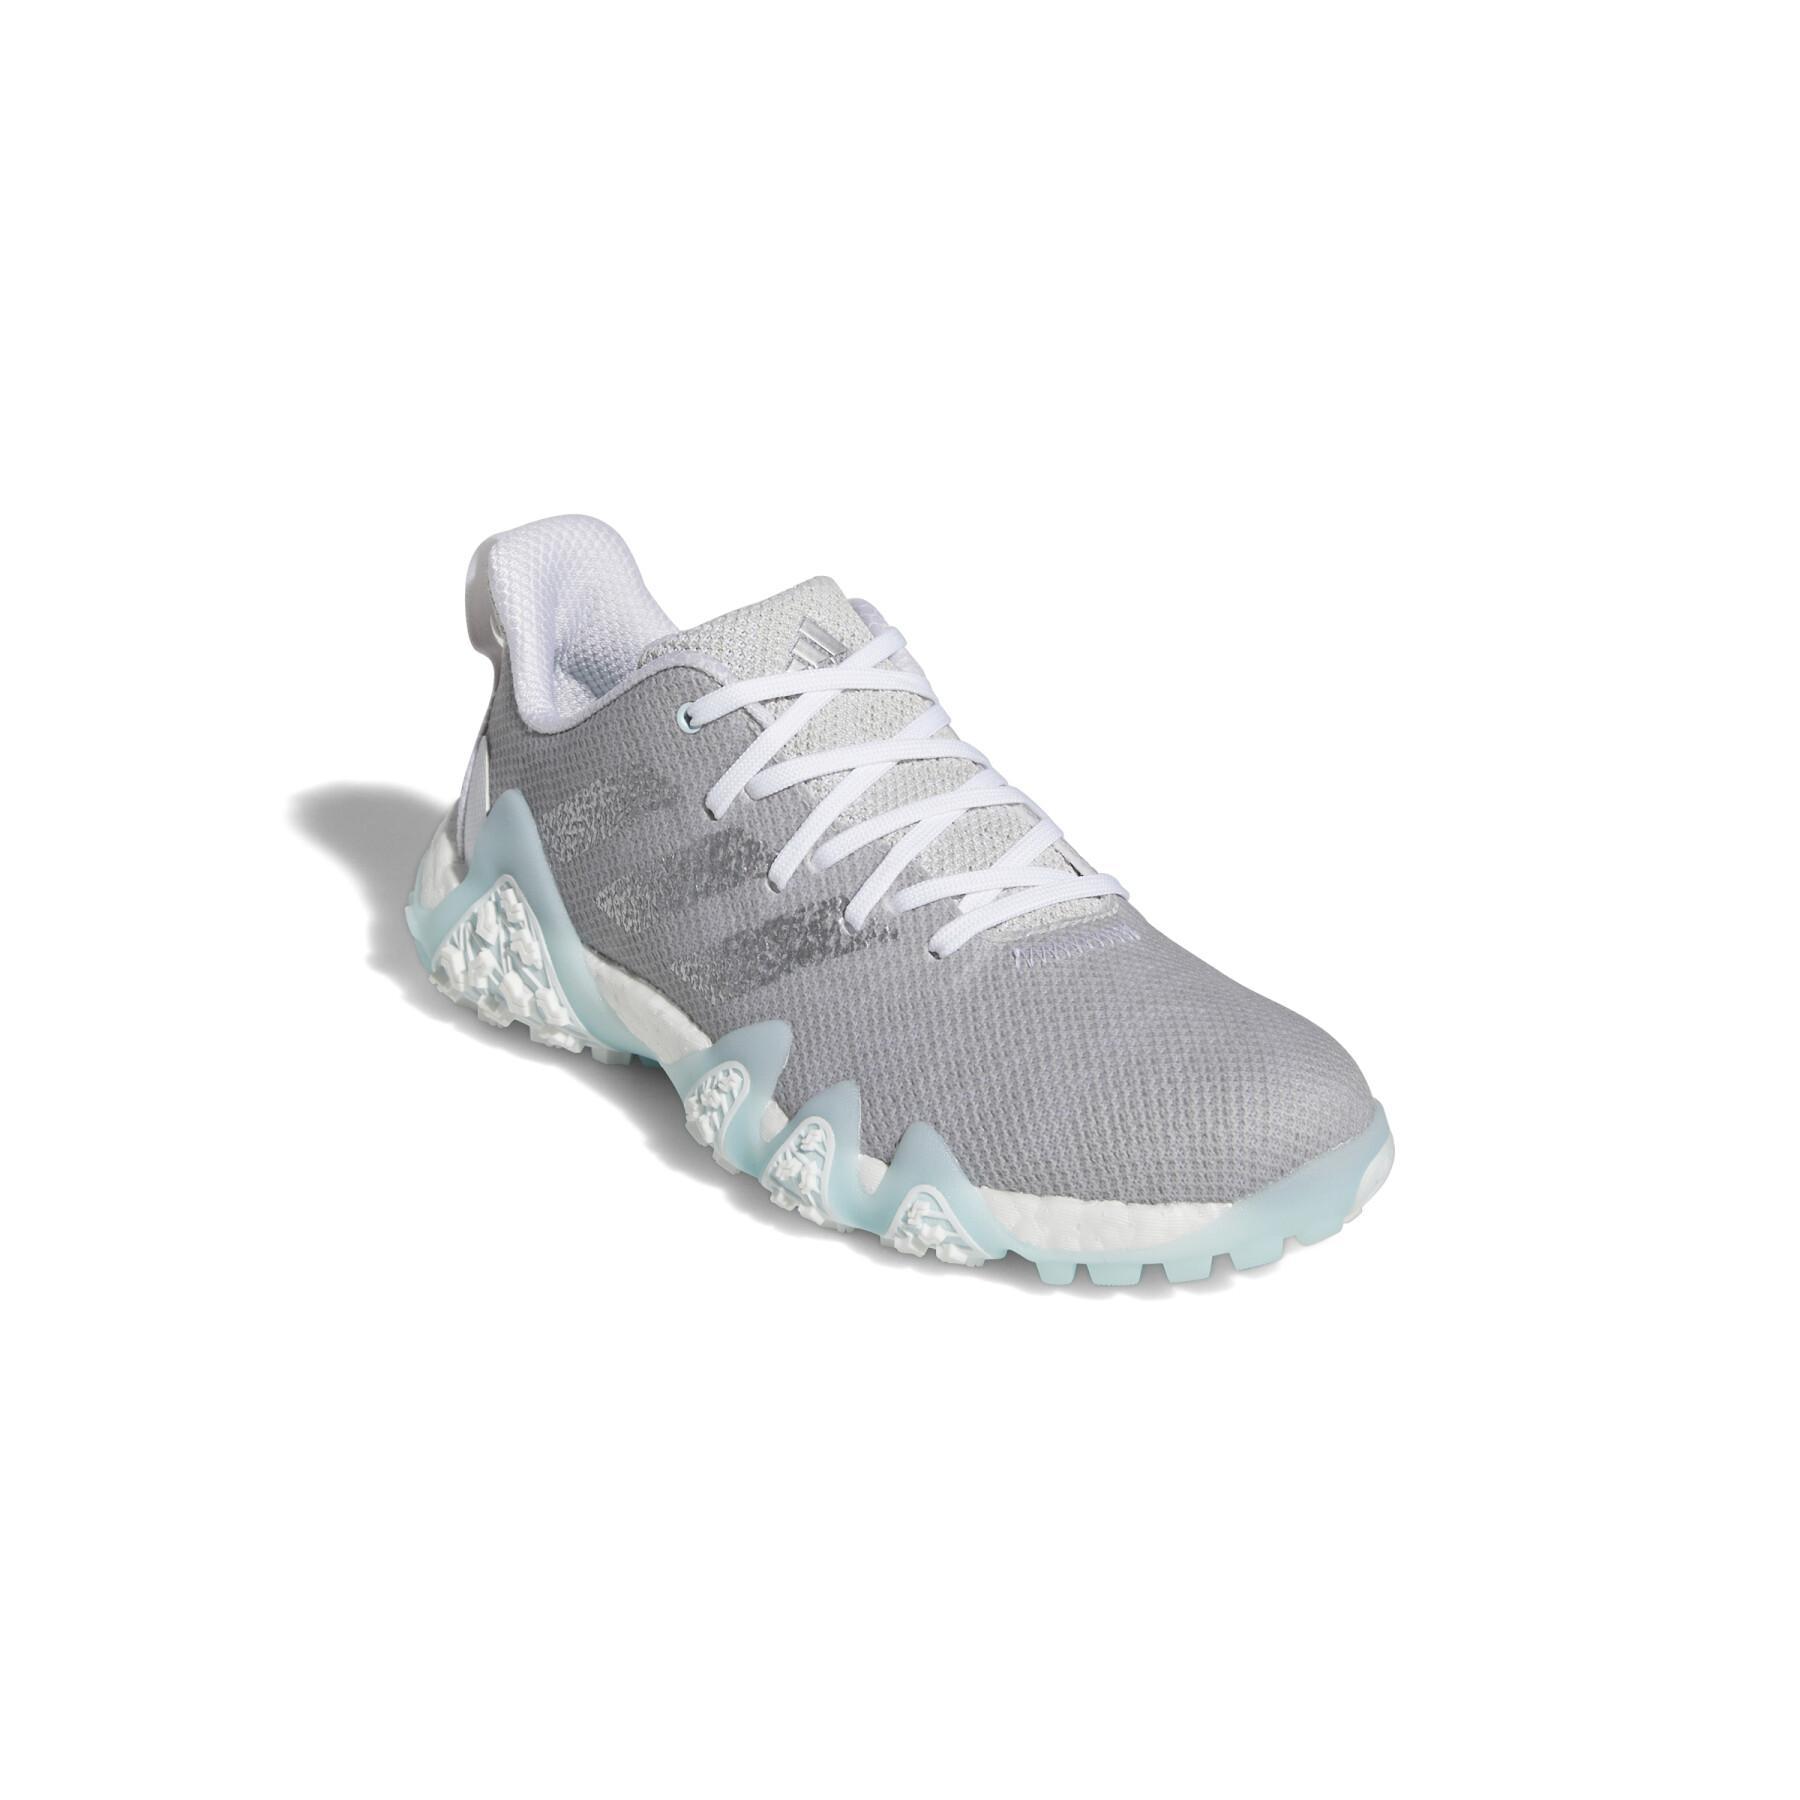 Women's spikeless golf shoes adidas Codechaos 22